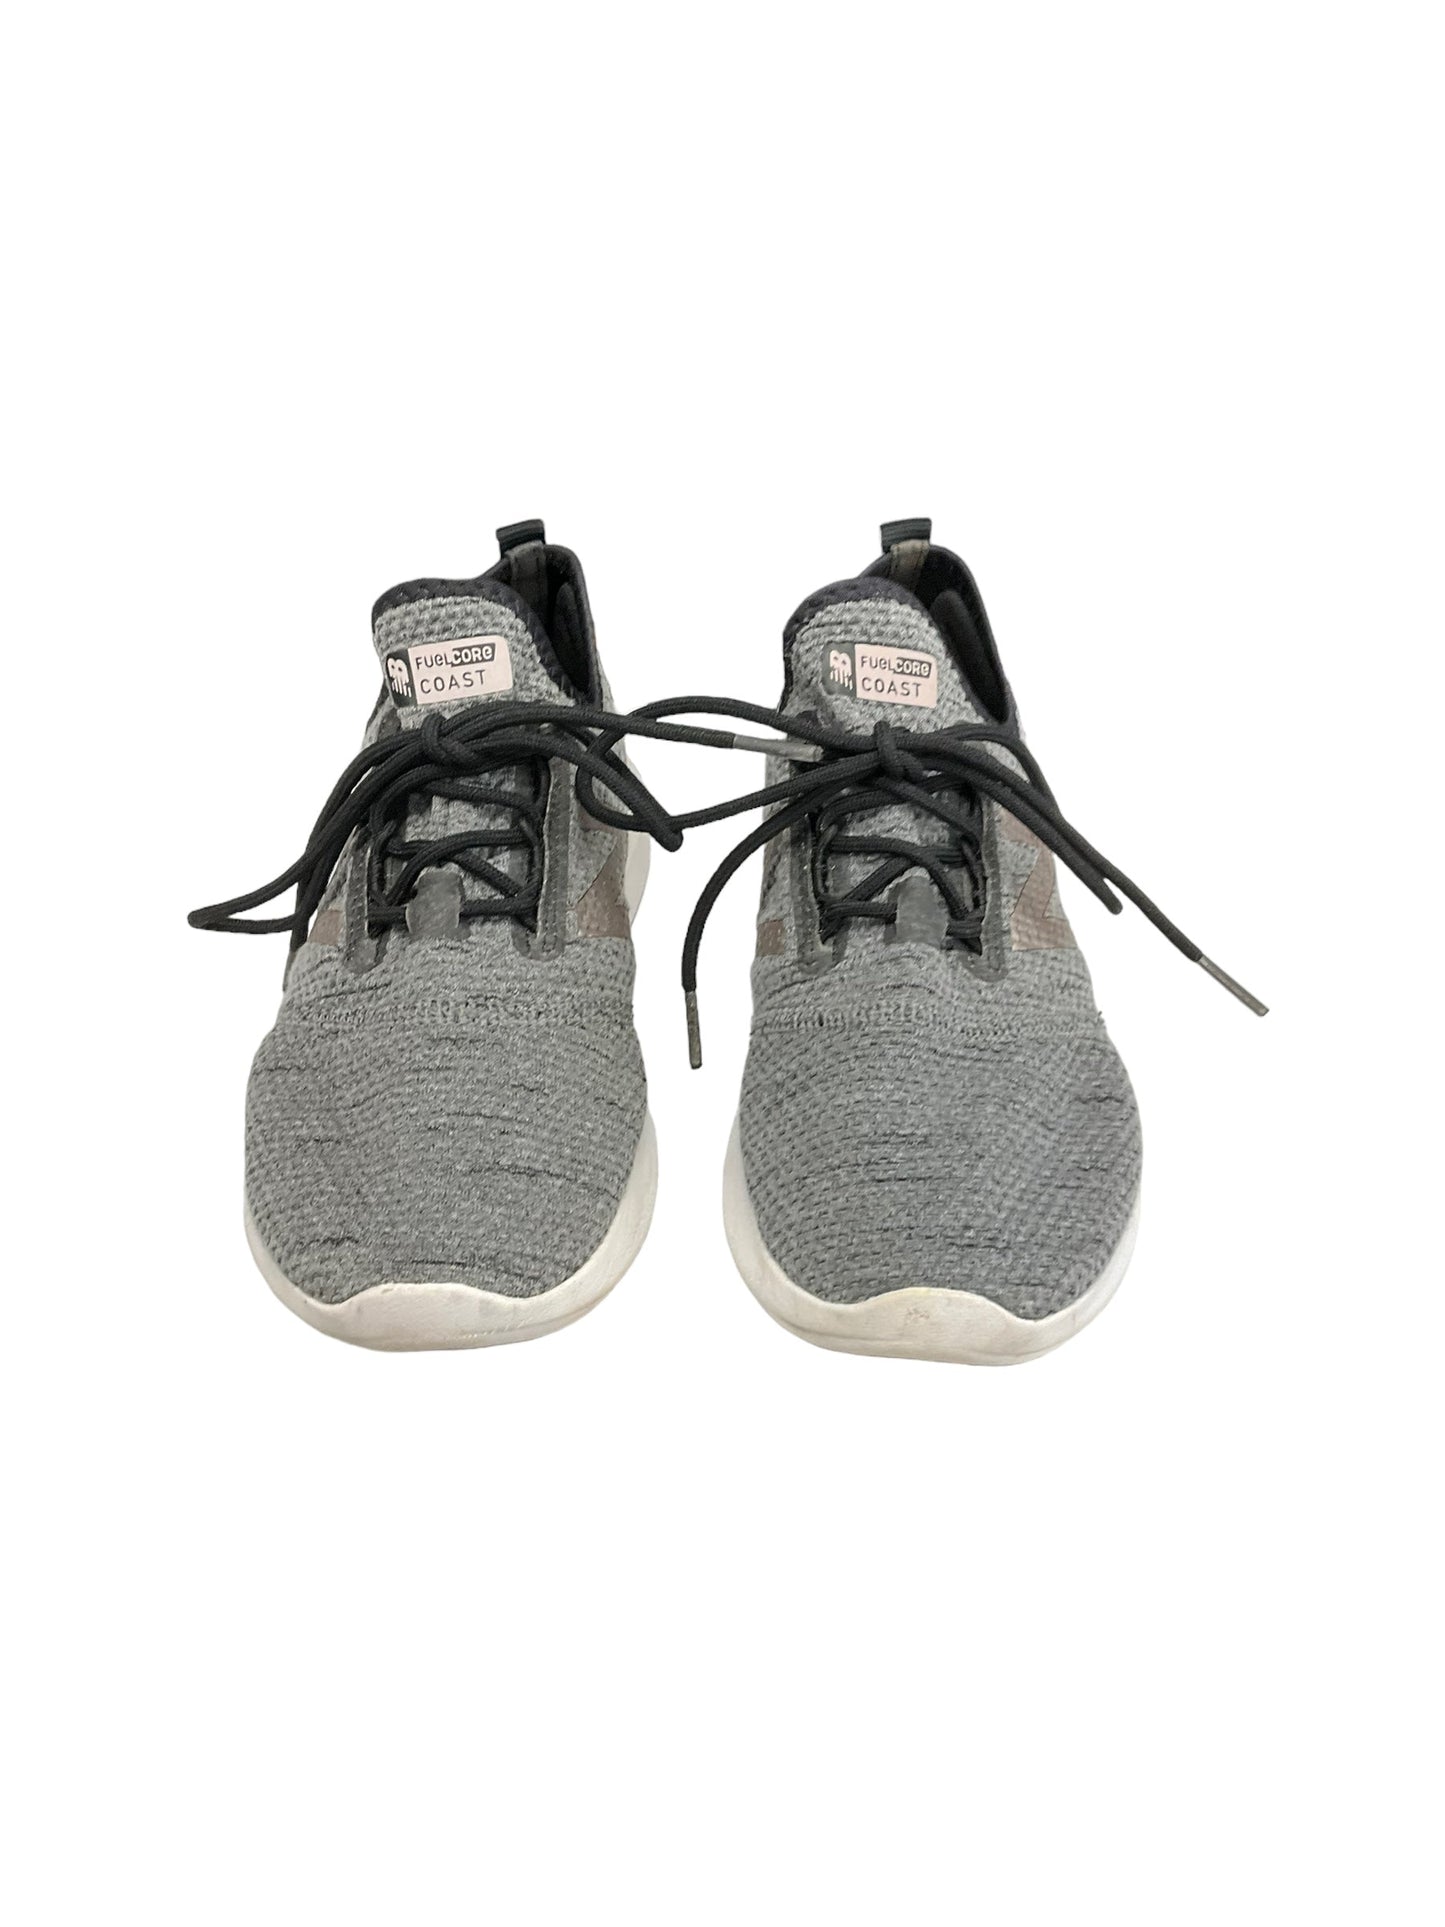 Grey Shoes Athletic New Balance, Size 7.5